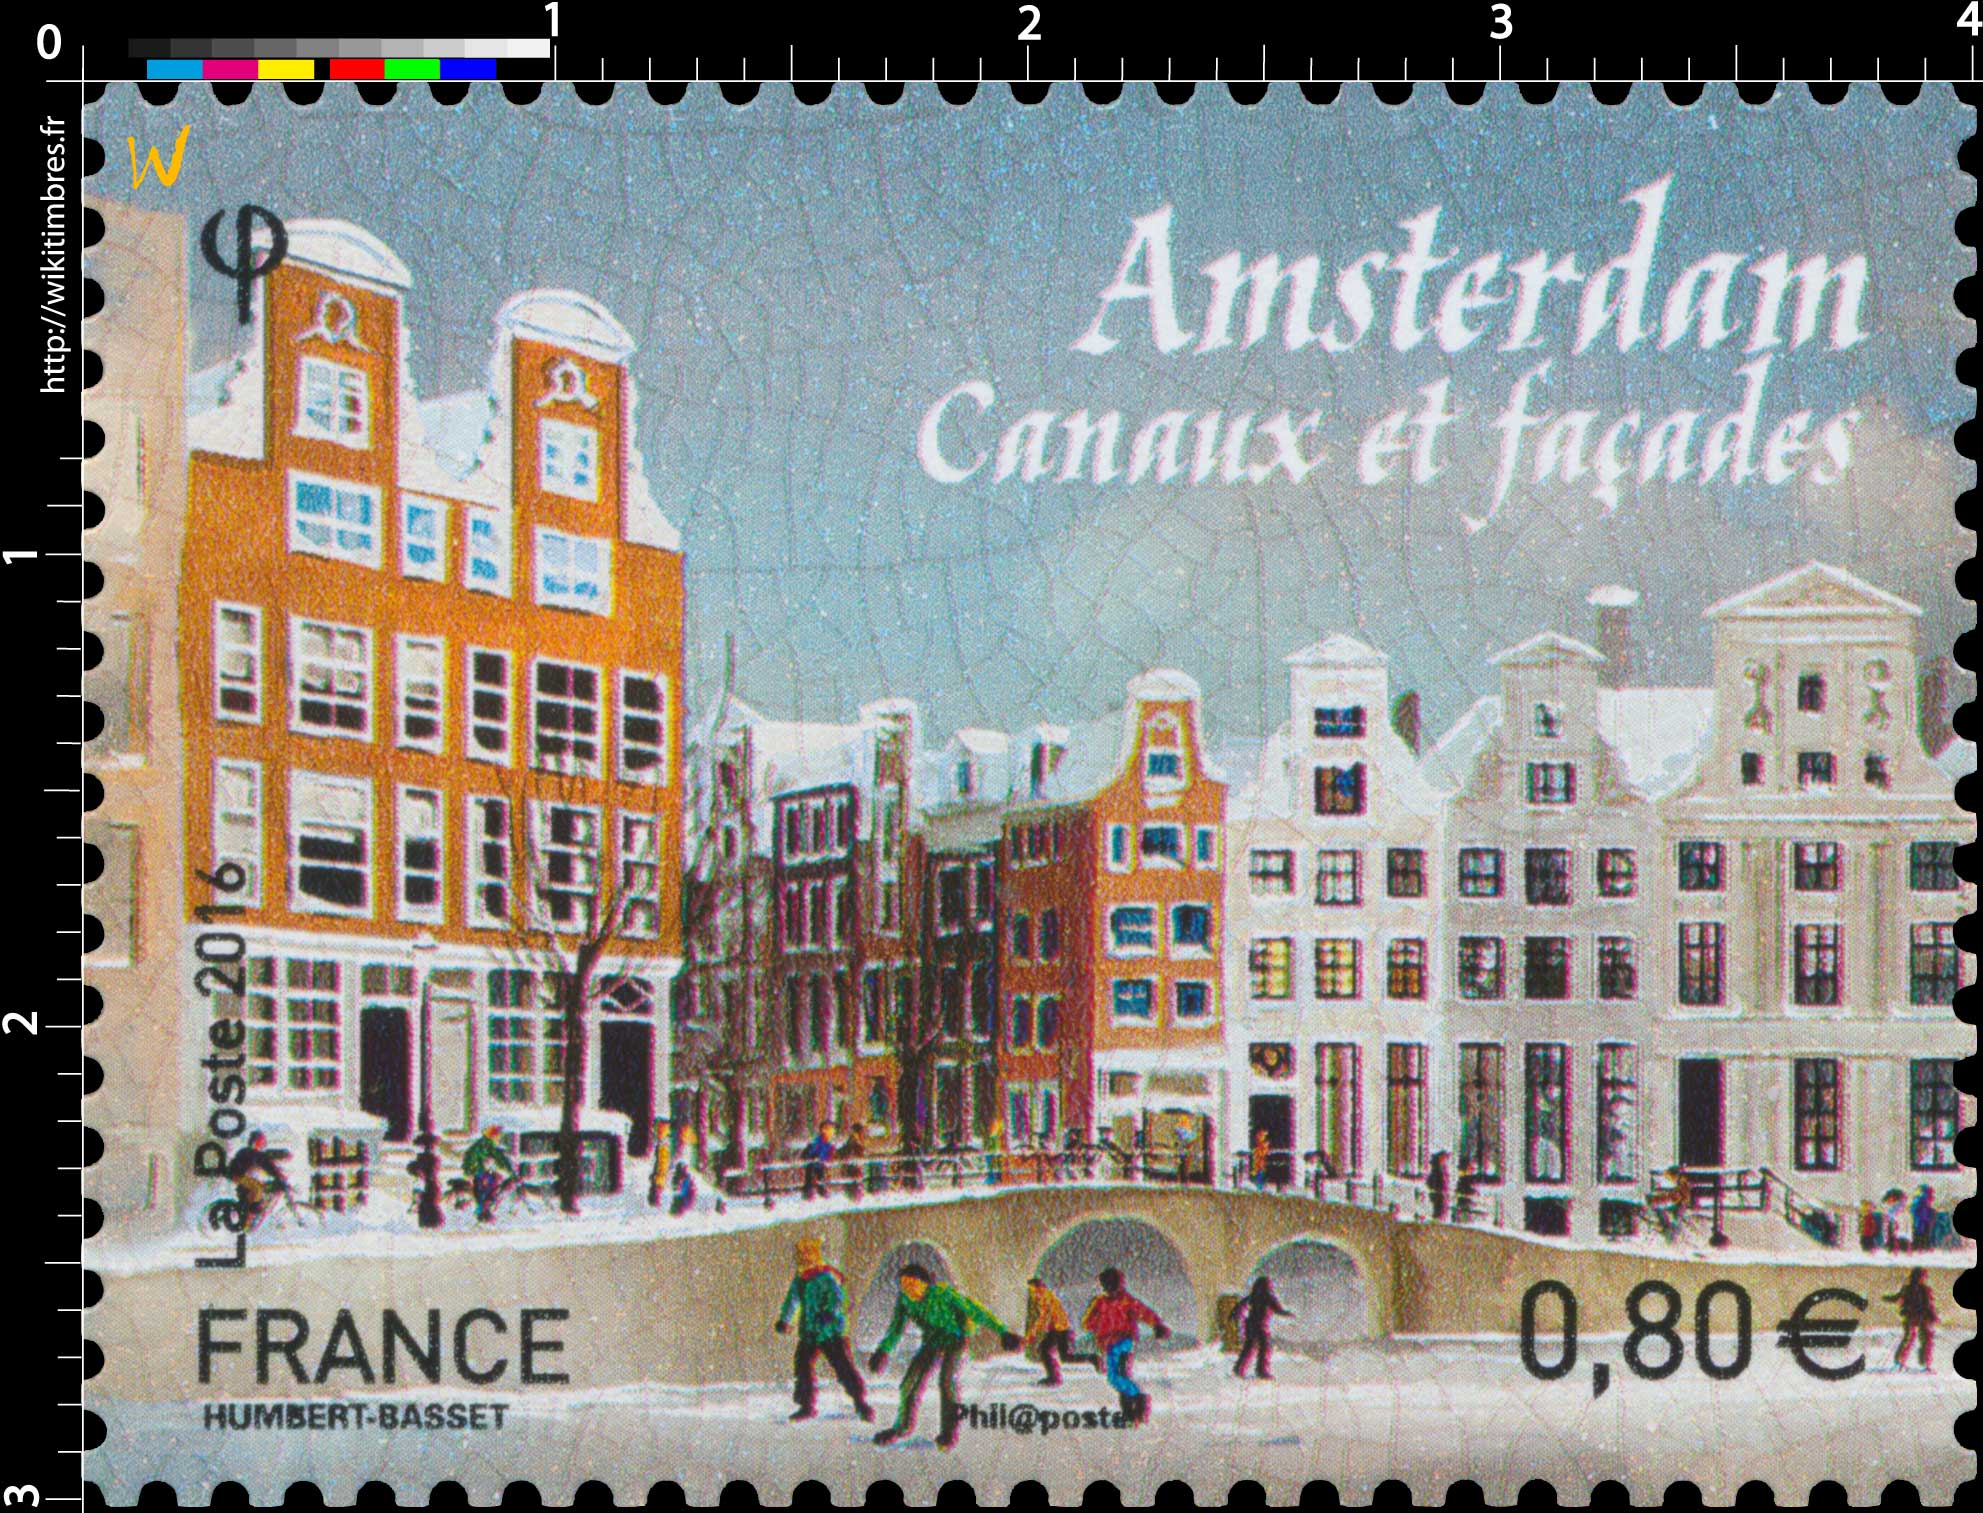 2016 Amsterdam - Canaux et façades